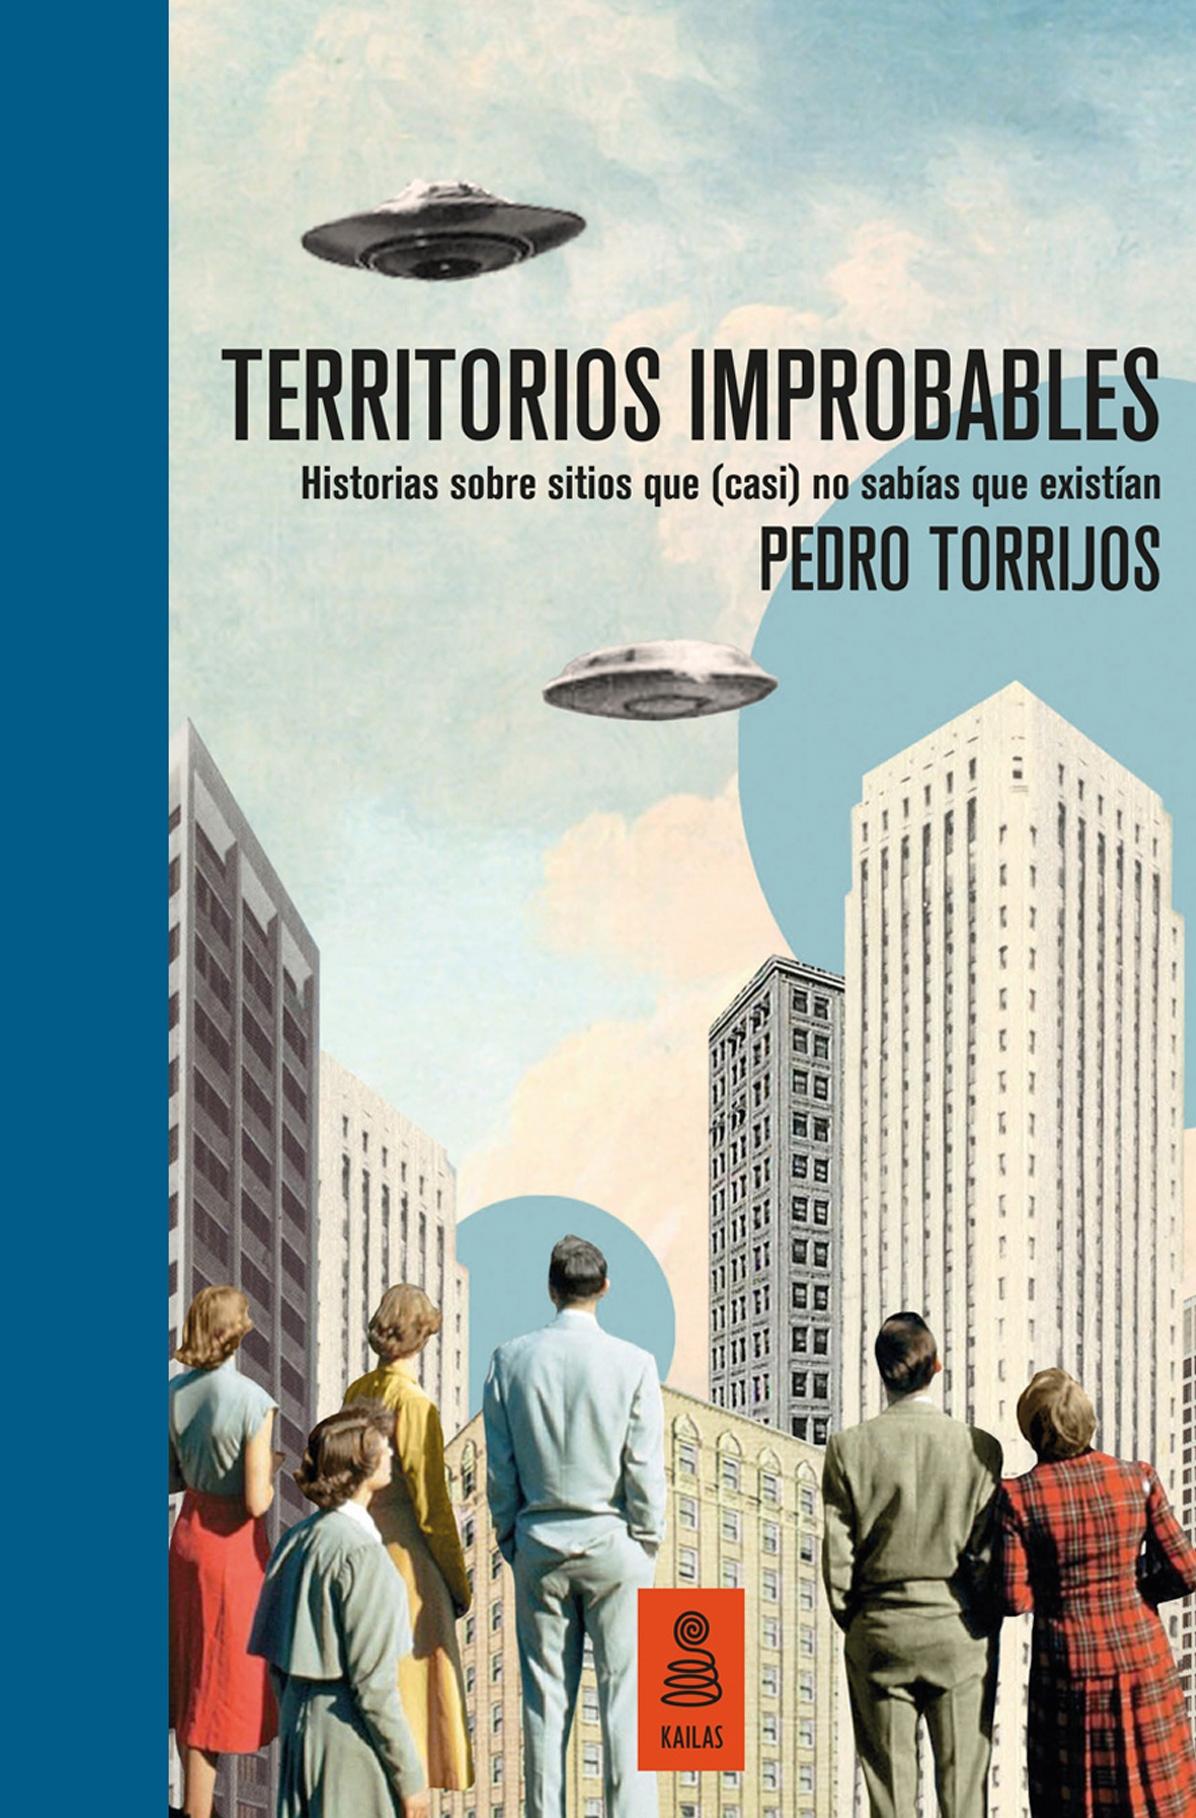 Territorios improbables (Edición limitada y numerada) "Historias sobre lugares que (casi) no sabías que existían"